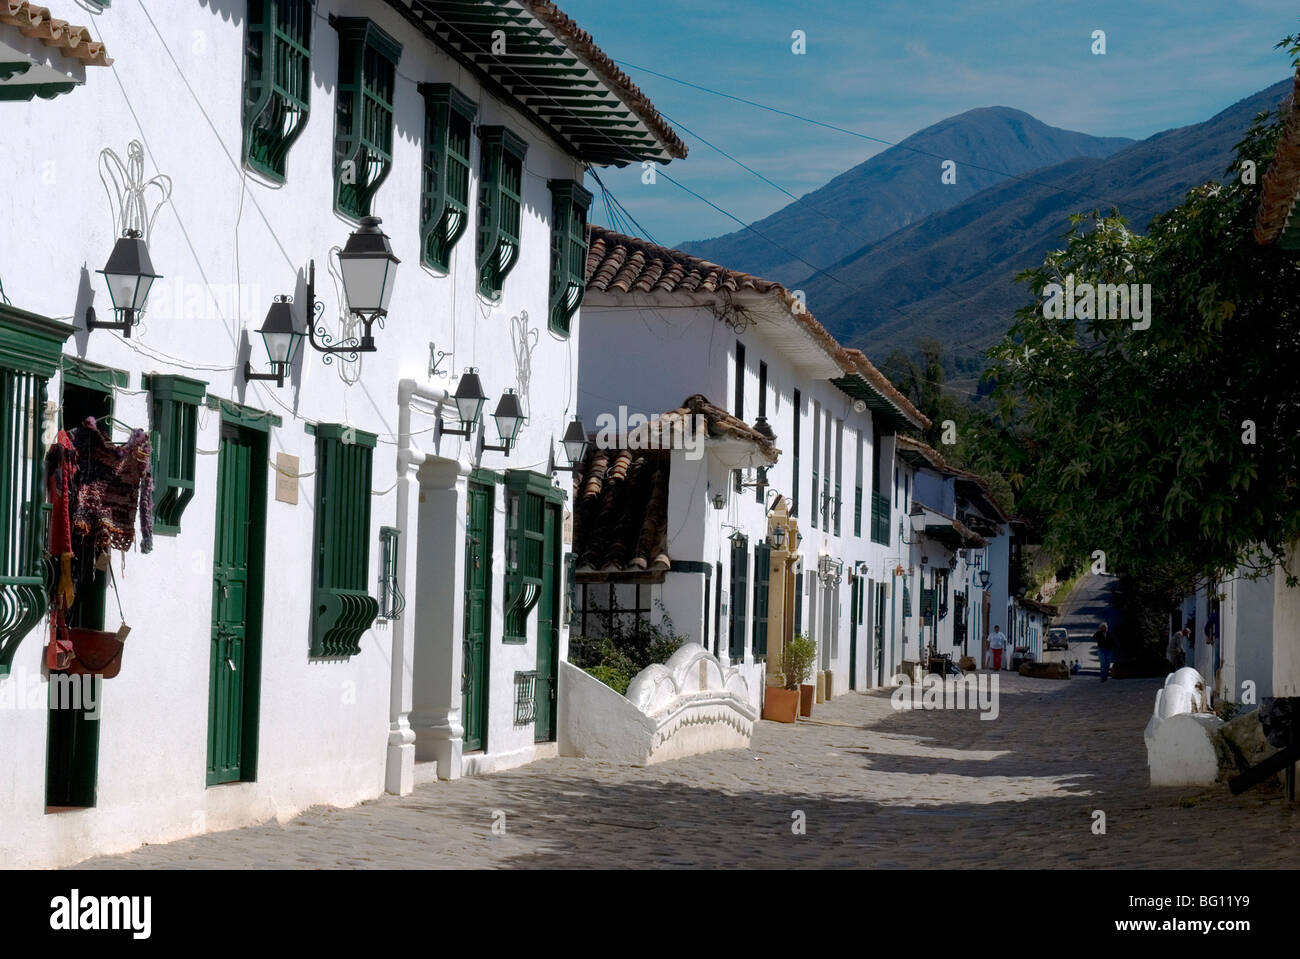 La ville coloniale de Villa de Leyva, Colombie, Amérique du Sud Banque D'Images